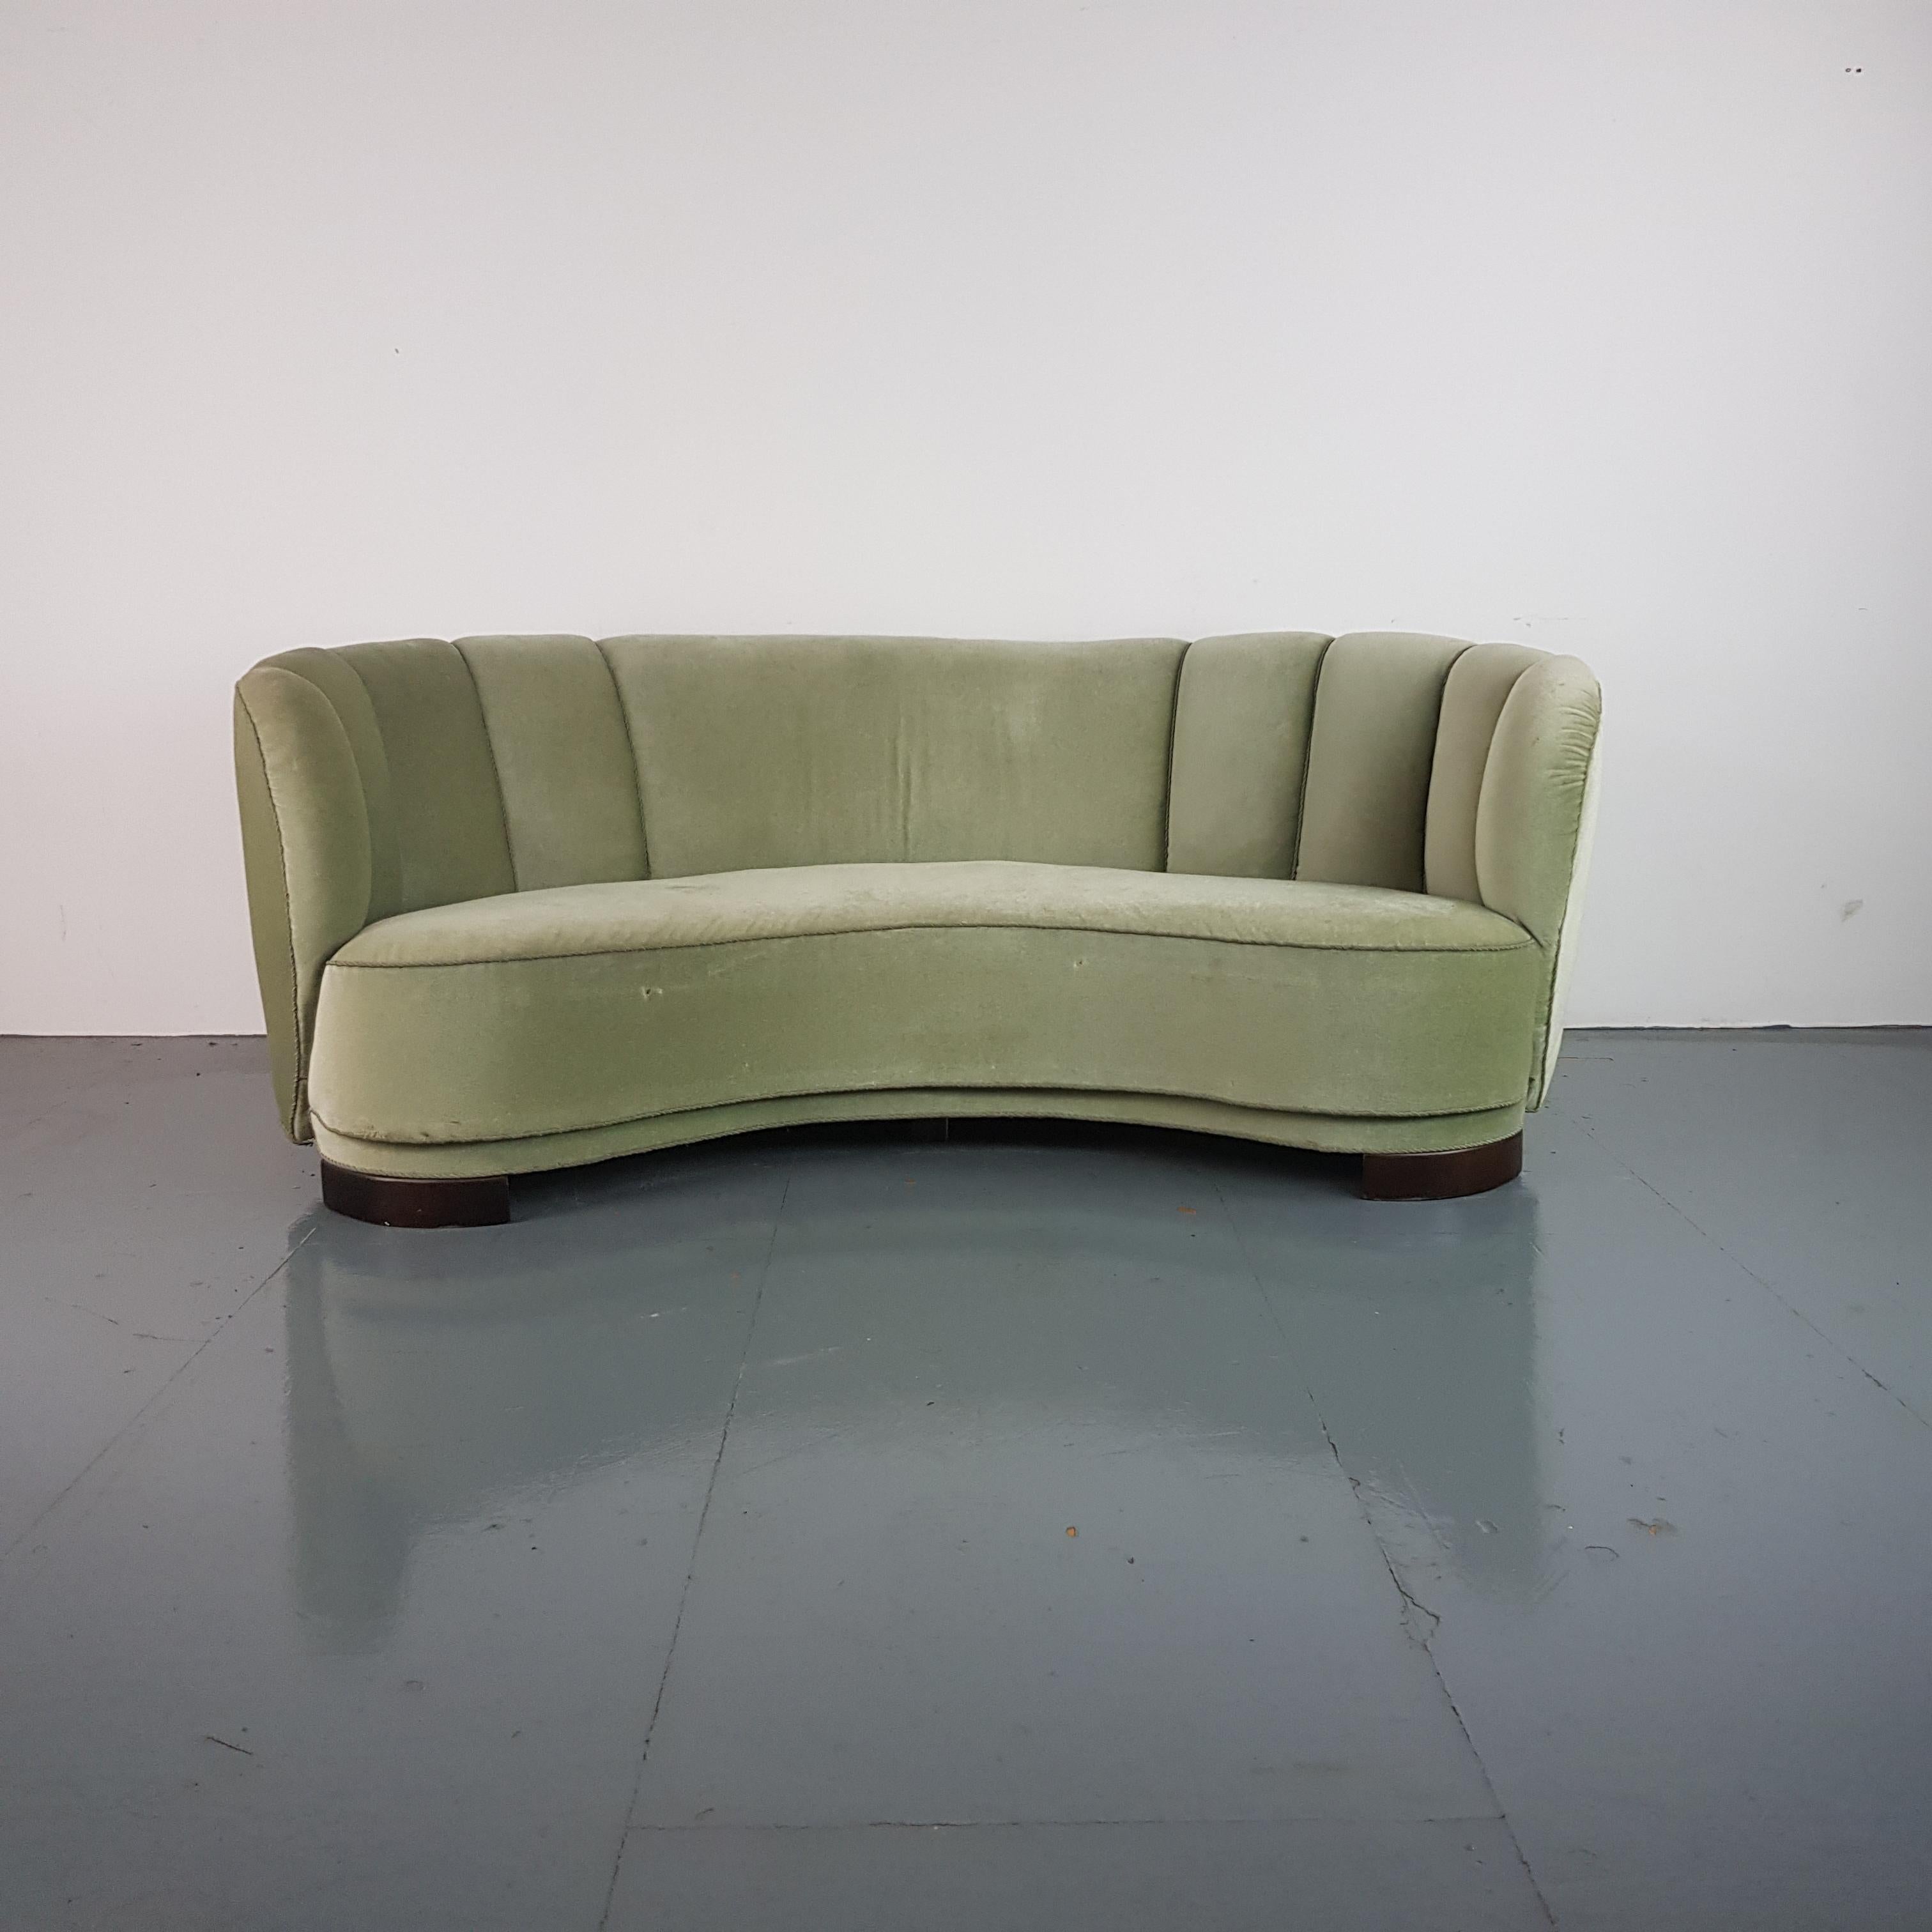 Vintage 1930s-1940s Danish Banana Sofa with Original Green Velvet Upholstery For Sale 4